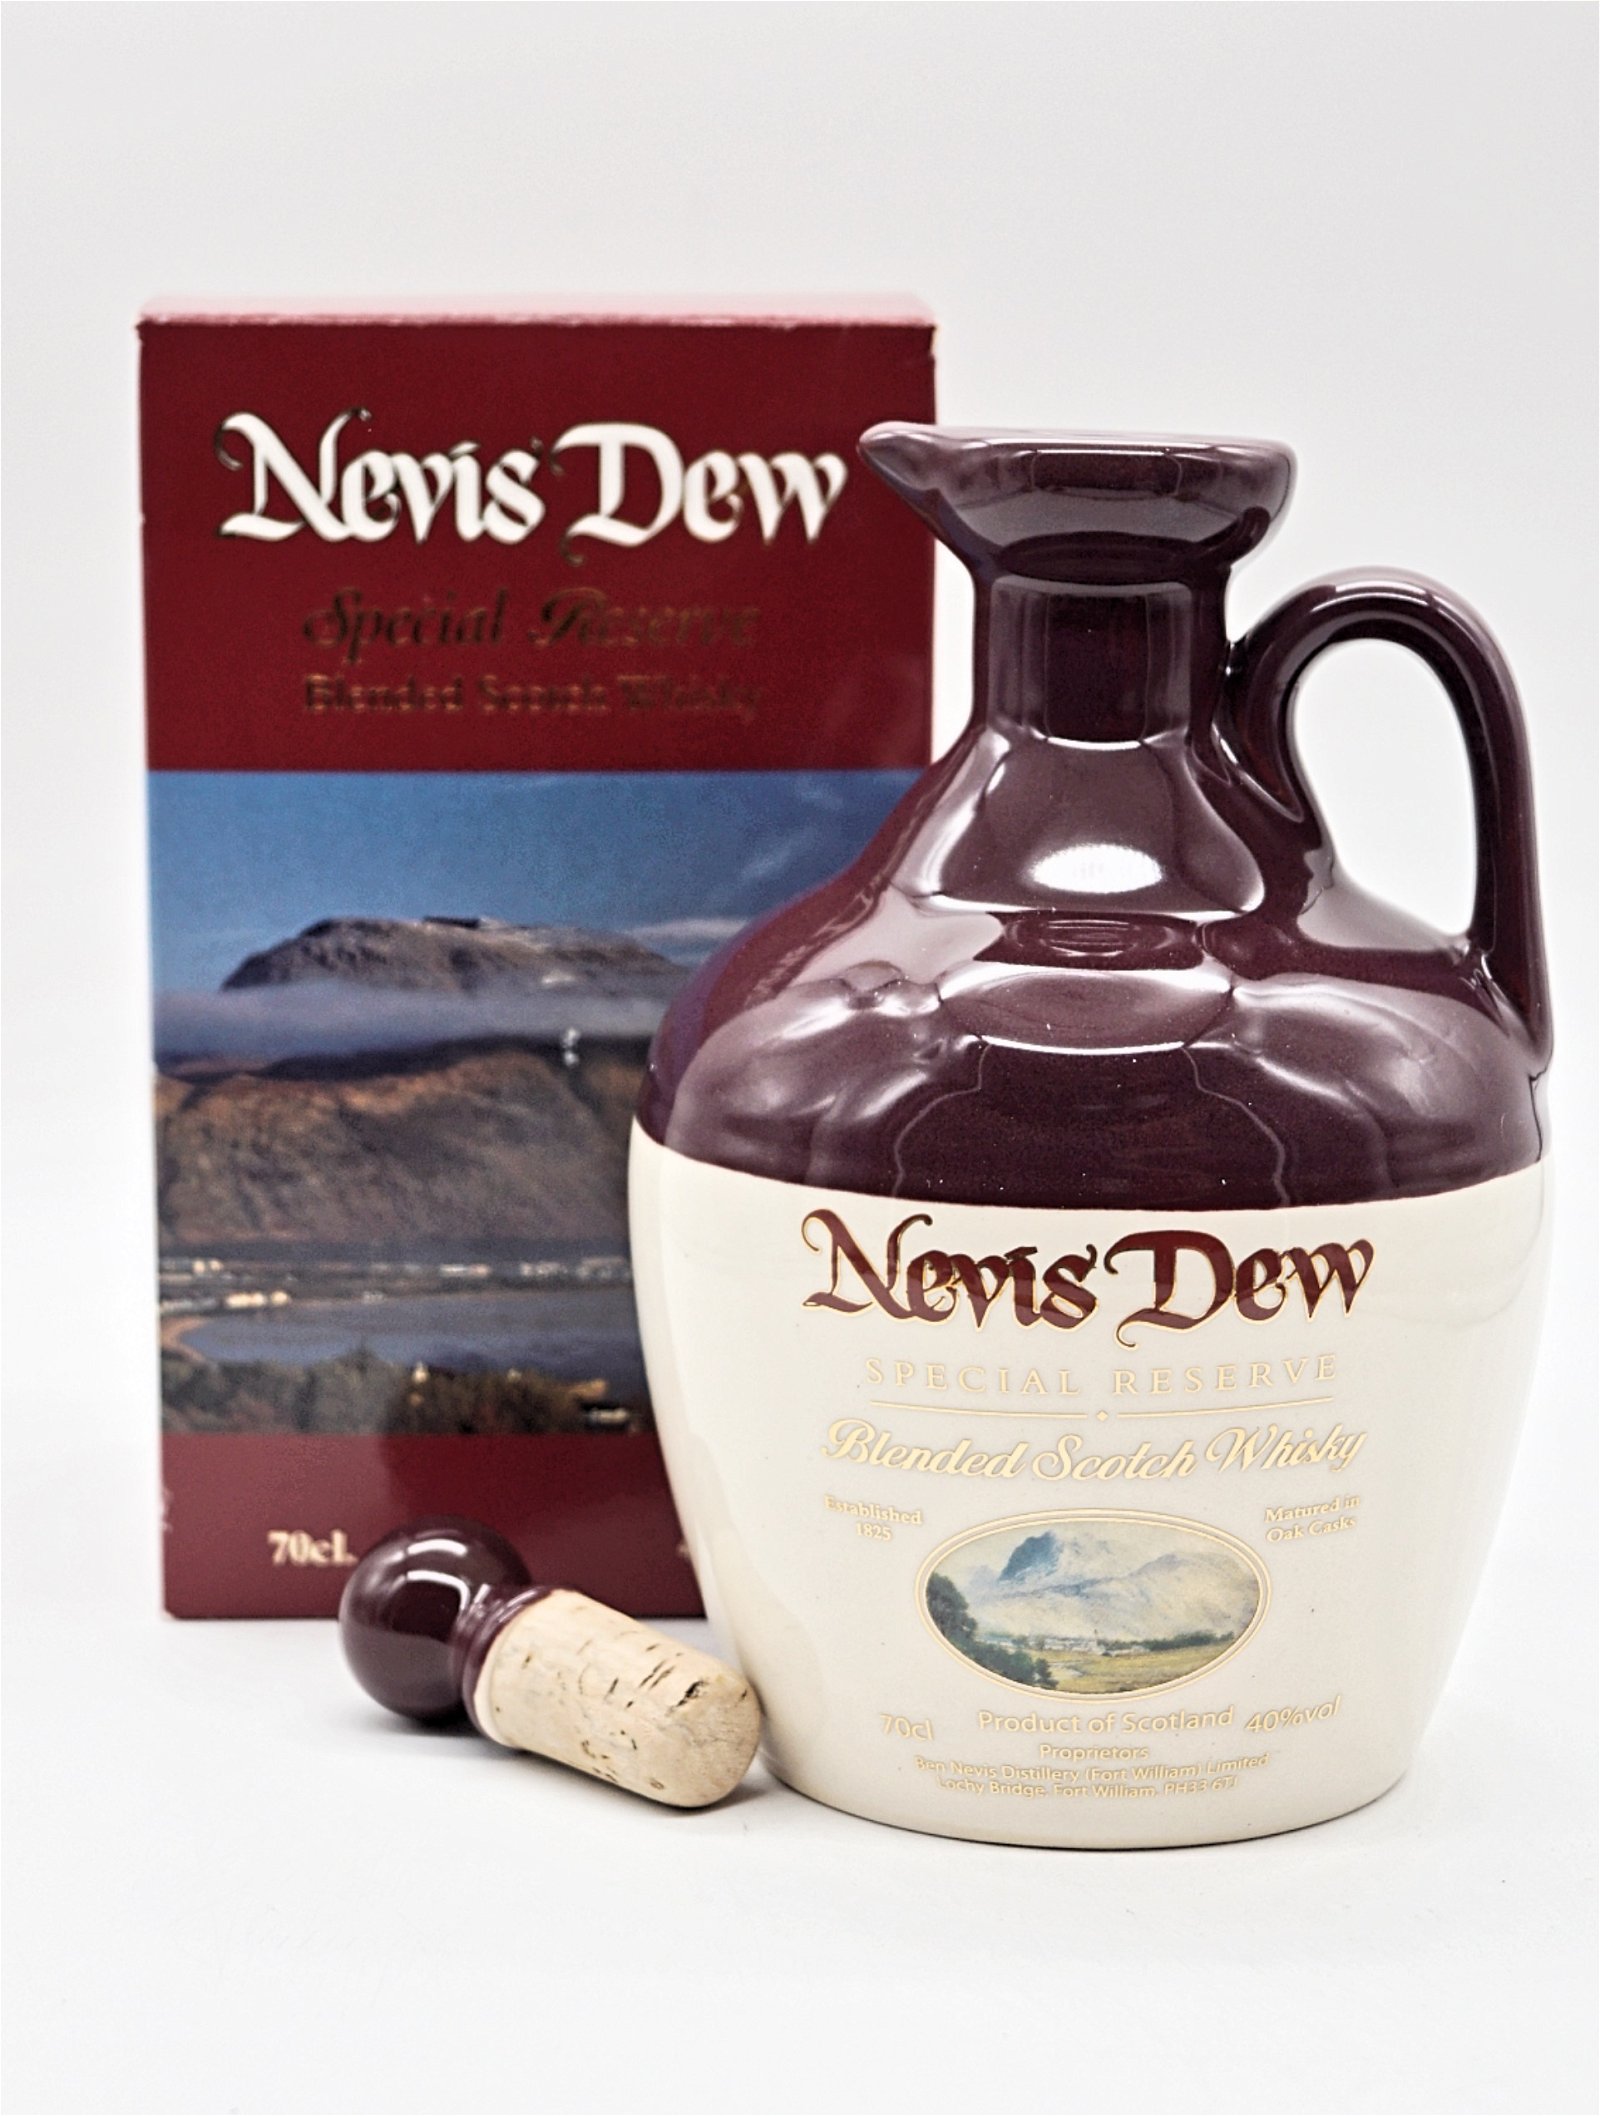 Nevis Dew Special Reserve Blended Scotch Whisky im Keramikkrug